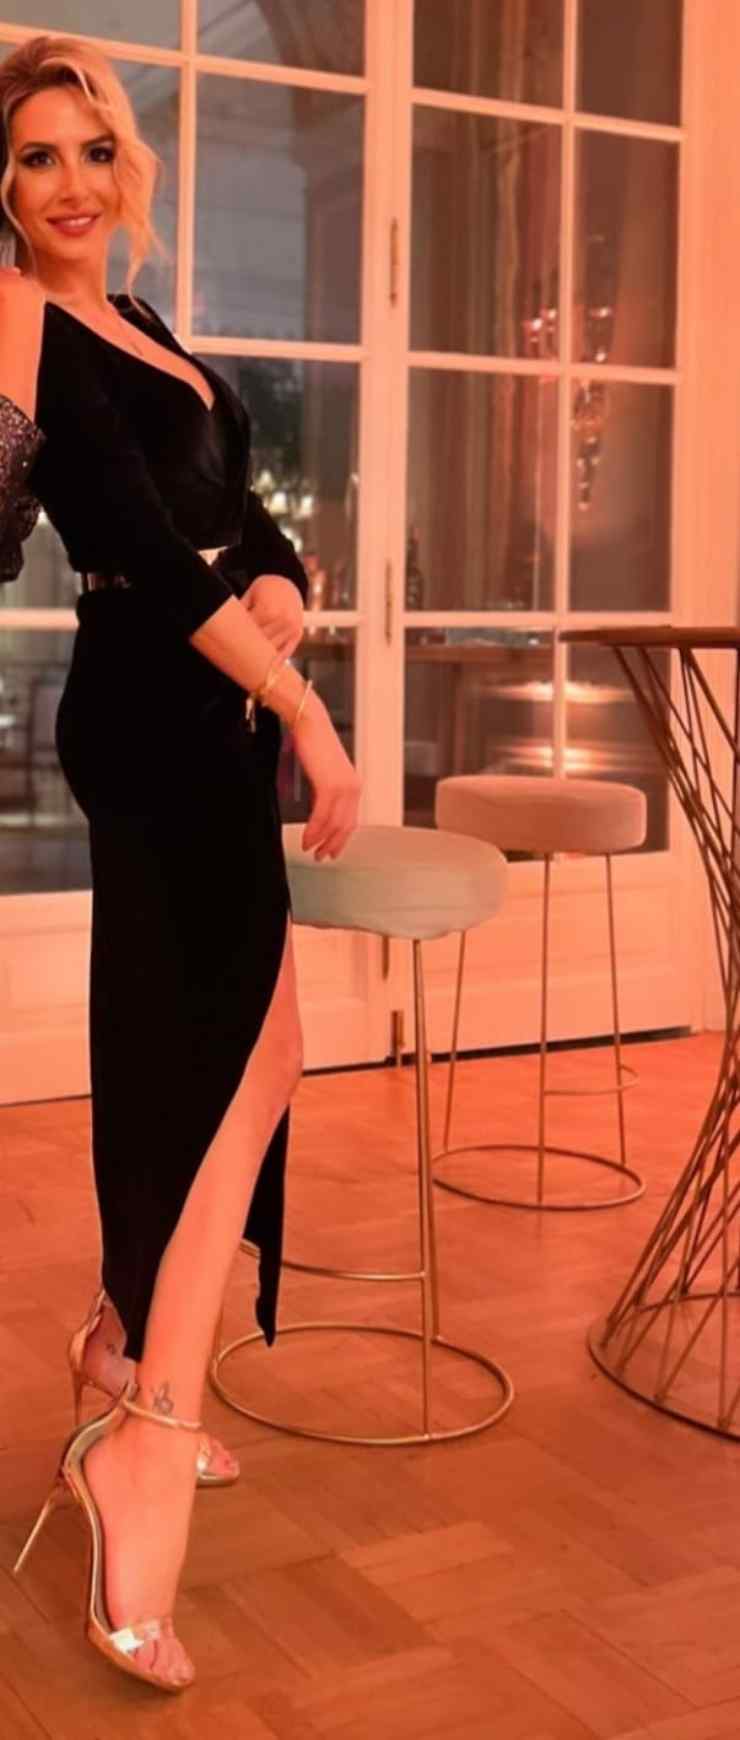 Ipnotica Giorgia Rossi: l'abito cattura like e quella scollatura vertiginosa